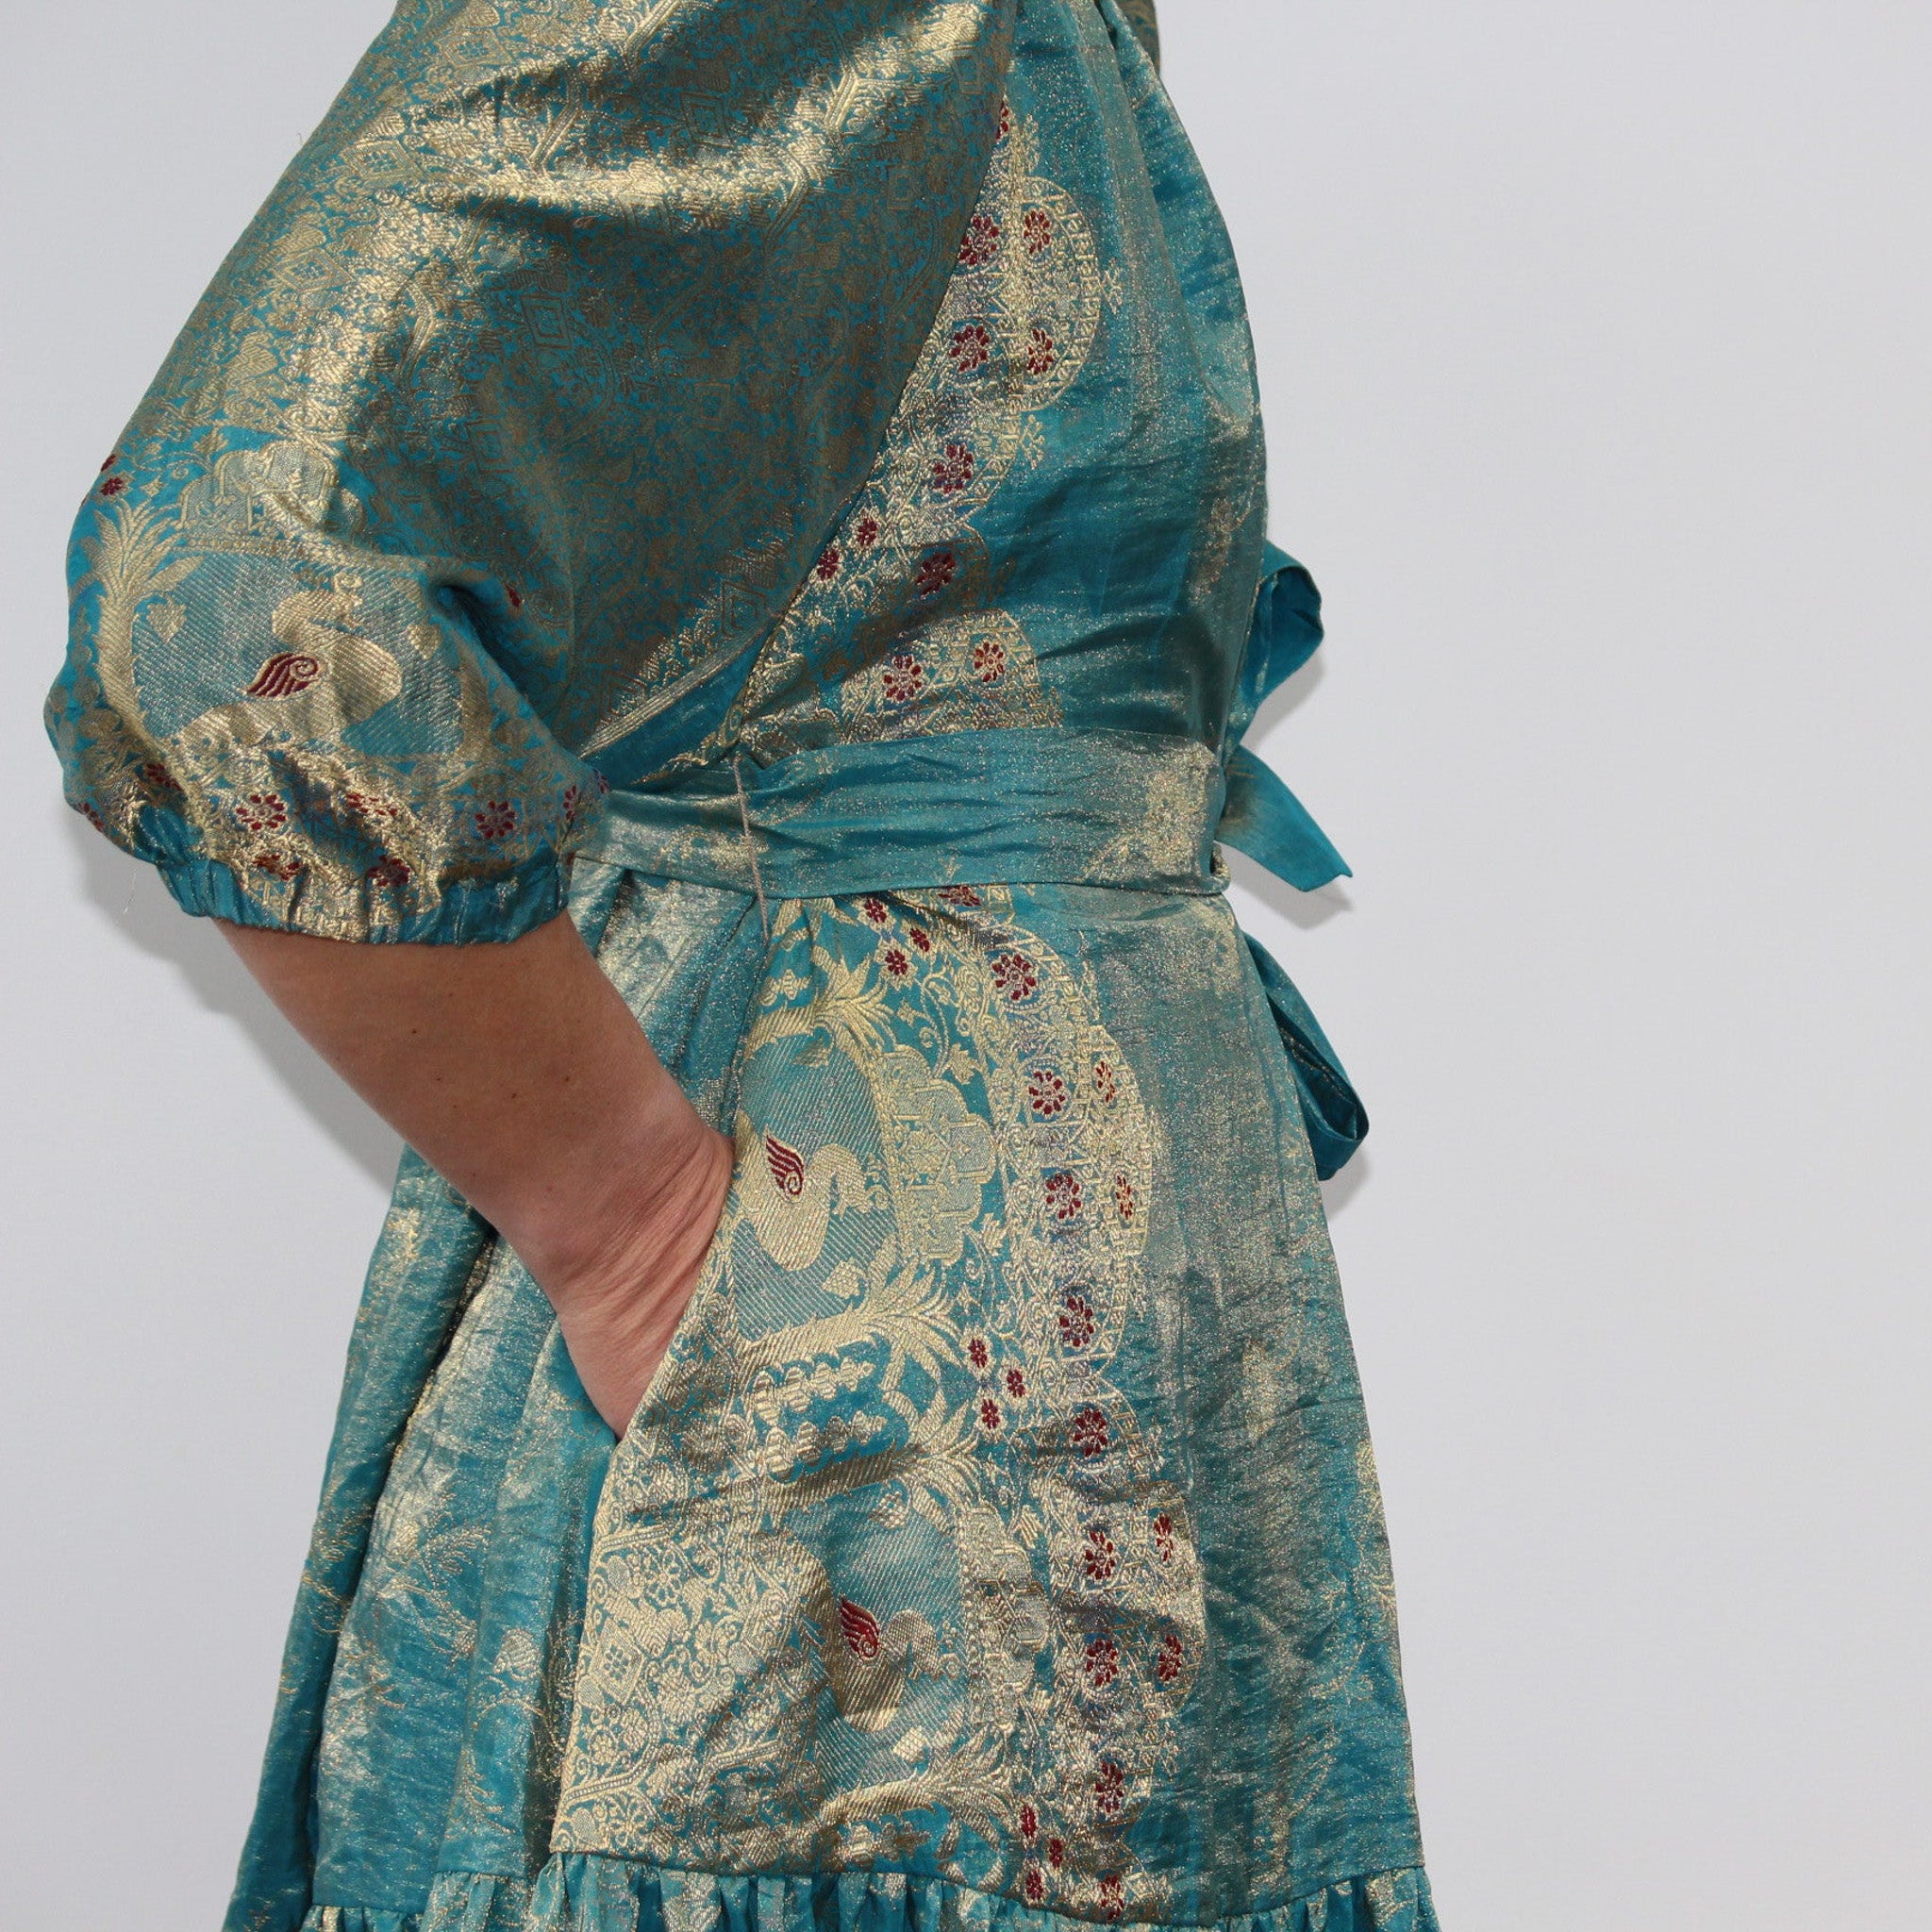 Ausus - Vintage Silk Sari Aquamarine Blue Maxi Dress close